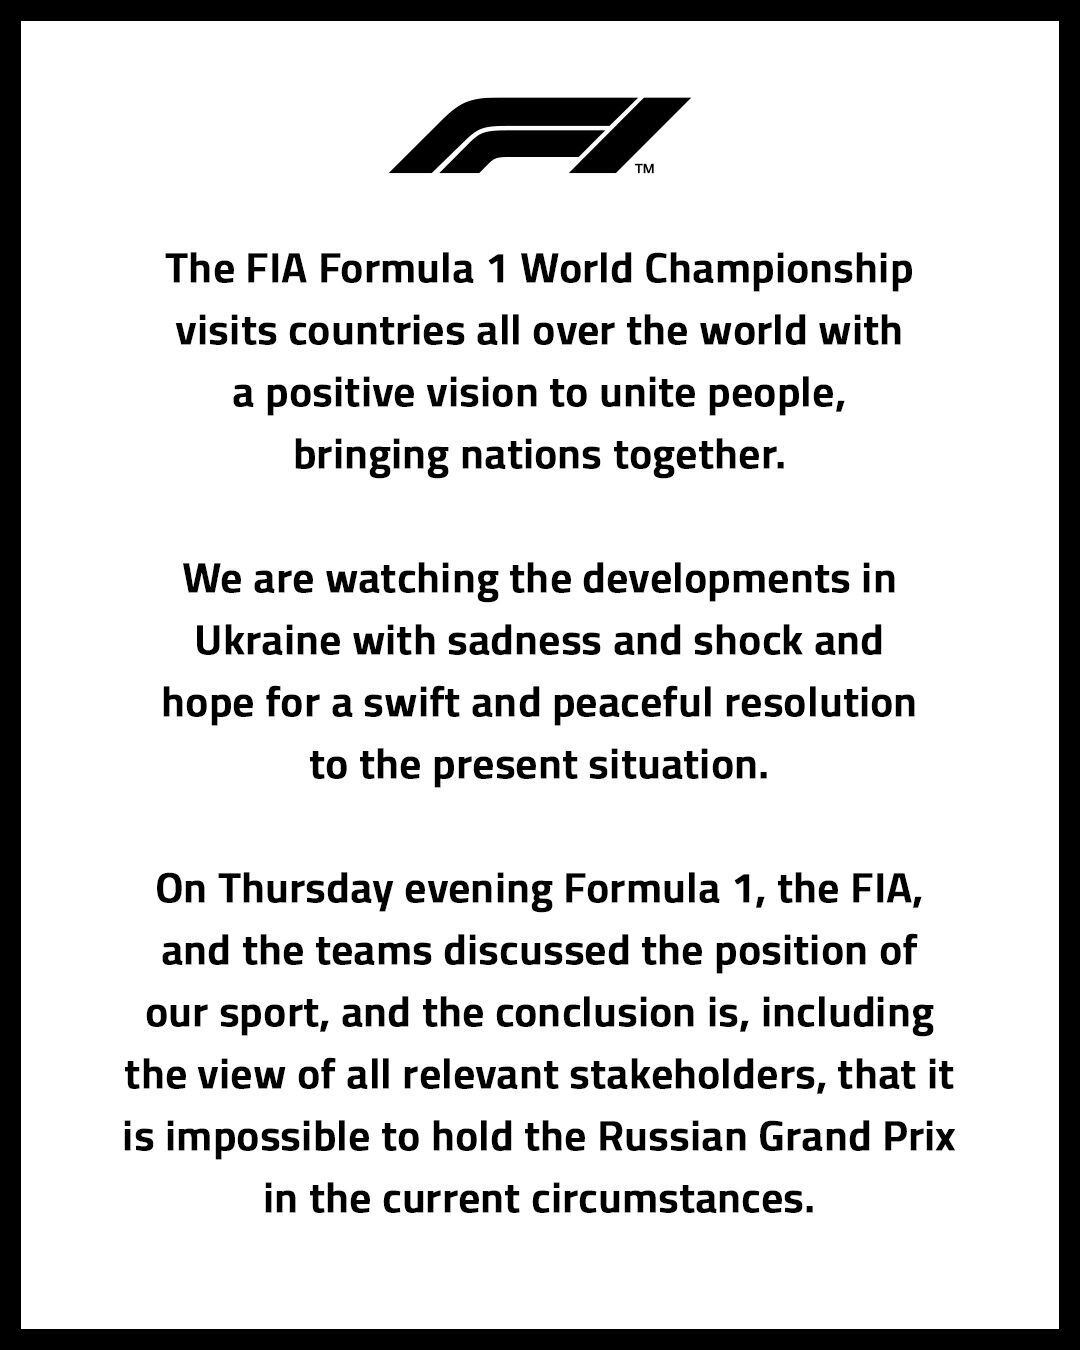 El comunicado de la FIA sobre el Gran Premio de Rusia. (Foto: Fórmula Uno)